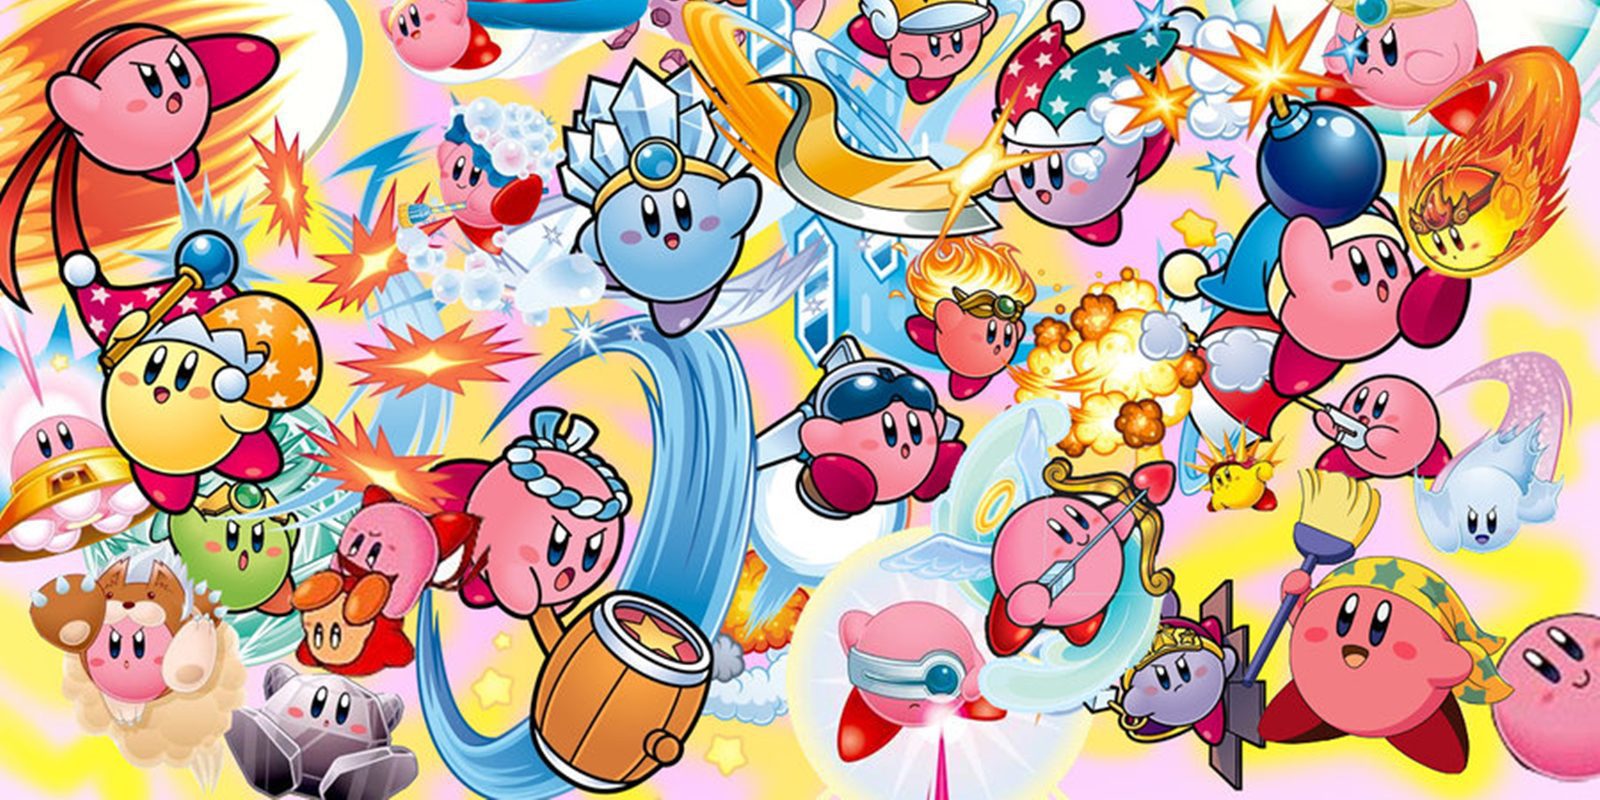 Salen a la luz los bocetos originales de 'Kirby: Planet Robobot' para 3DS